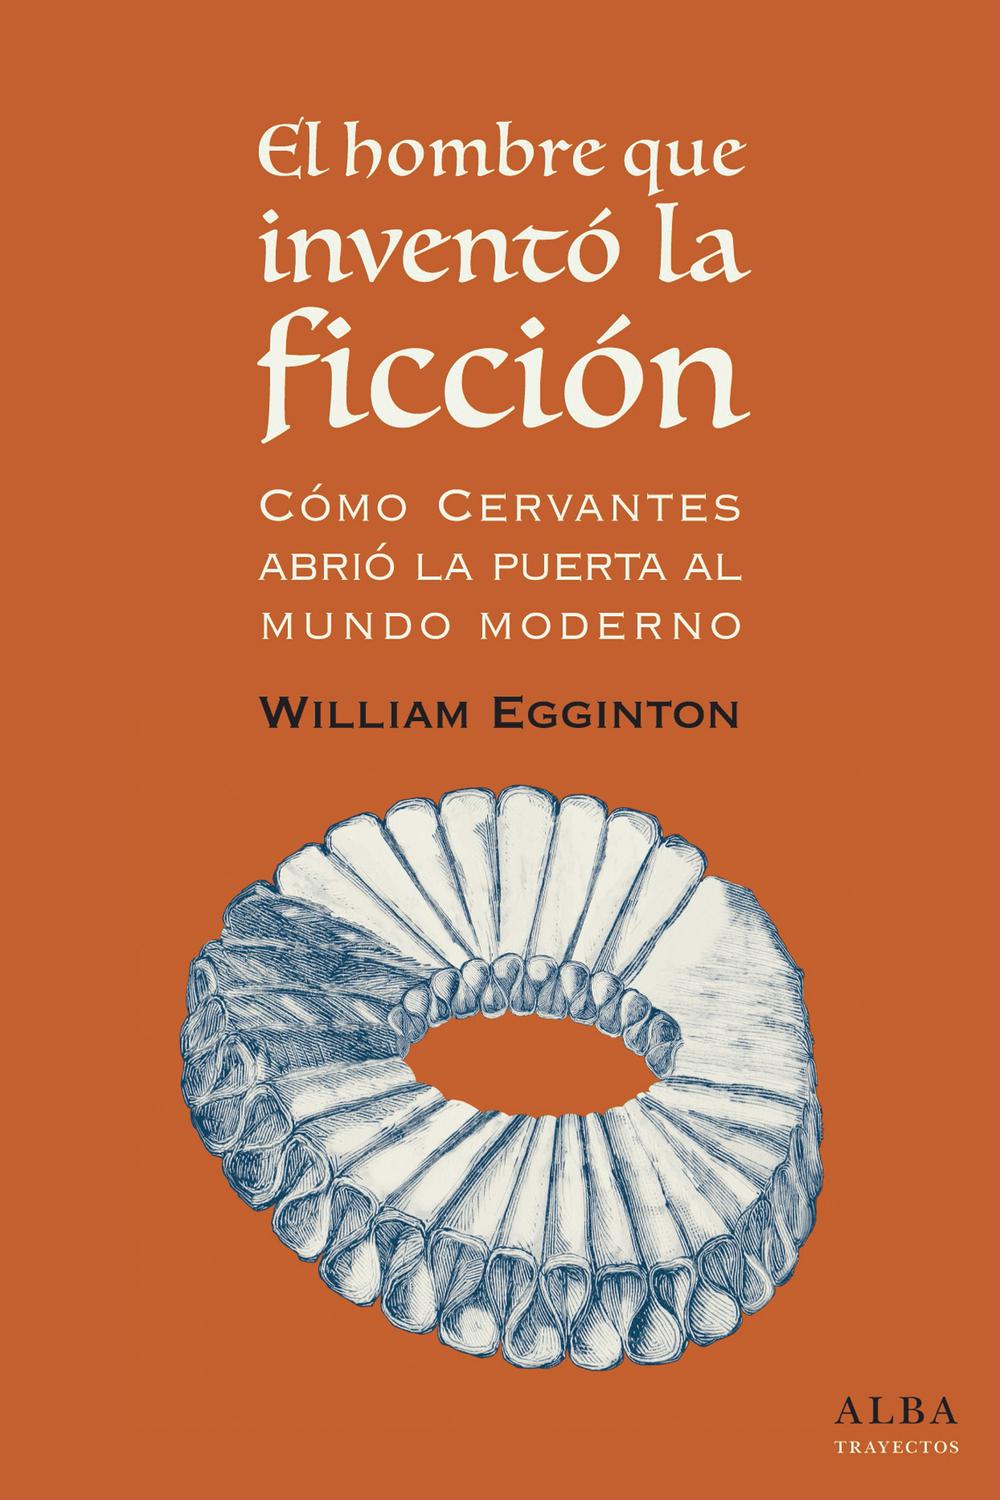 El hombre que inventó la ficción - William Egginton, Jesús Cuéllar